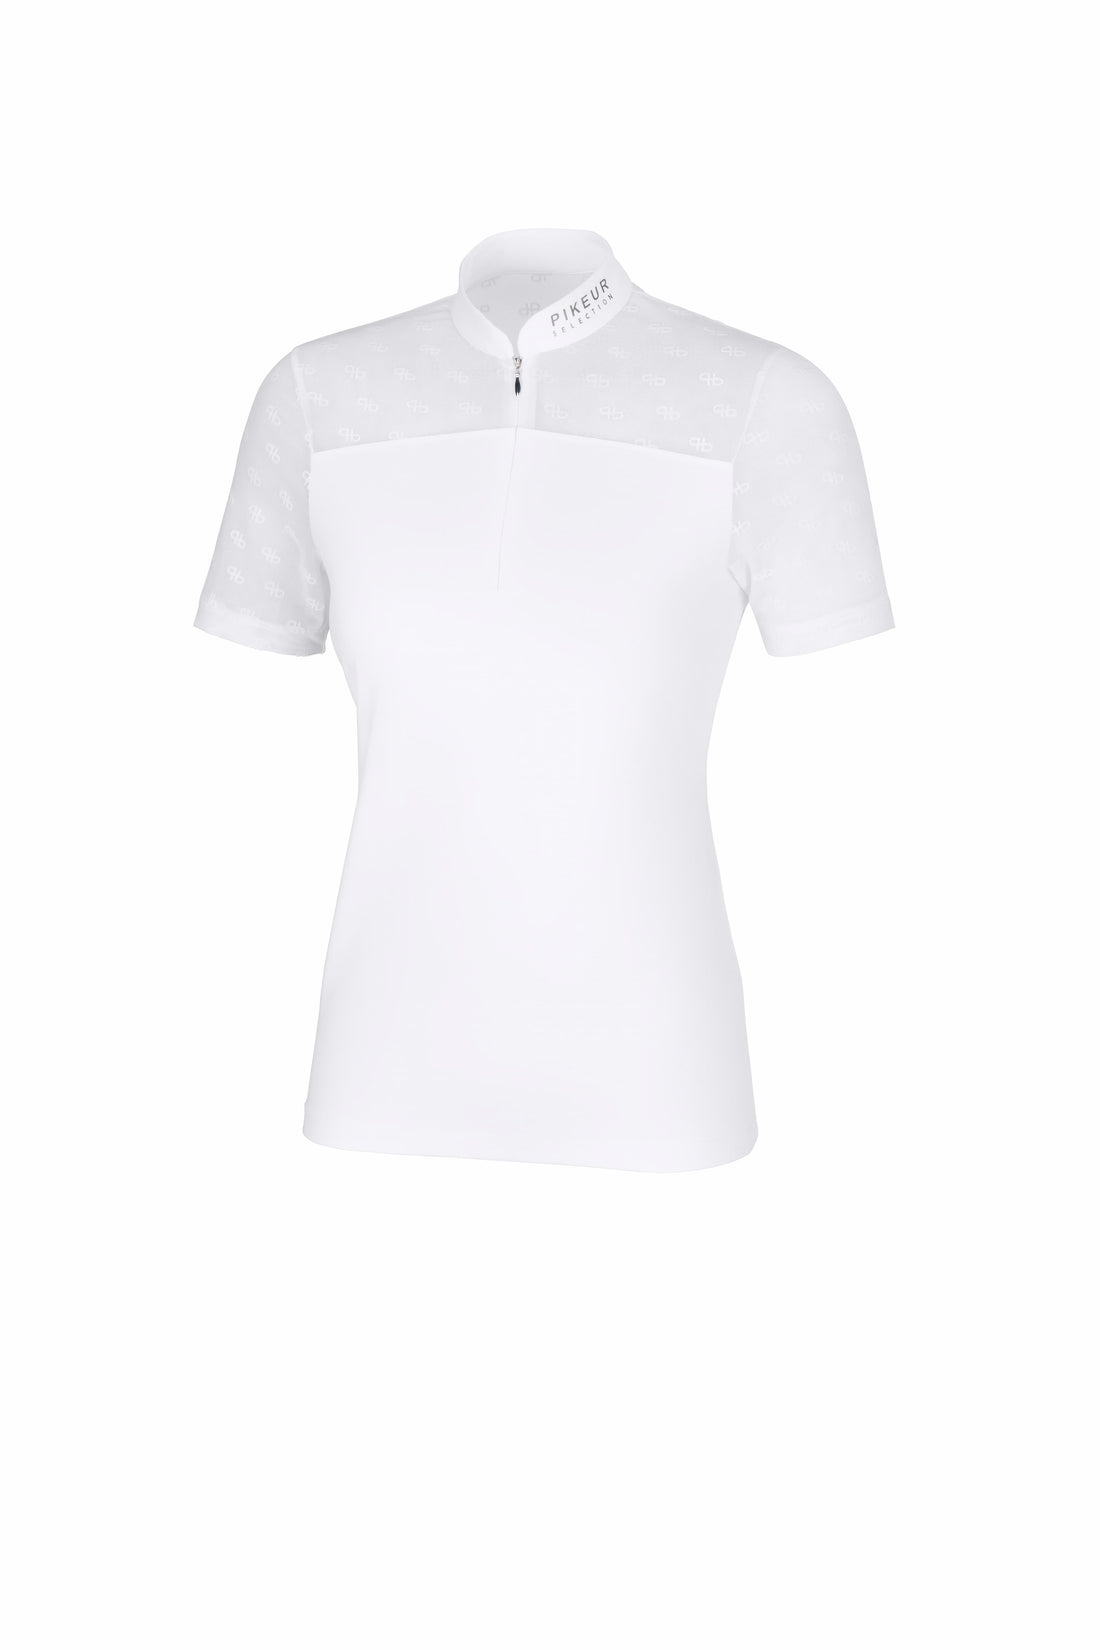 Pikeur Selection Stævne T-Shirt, Hvid